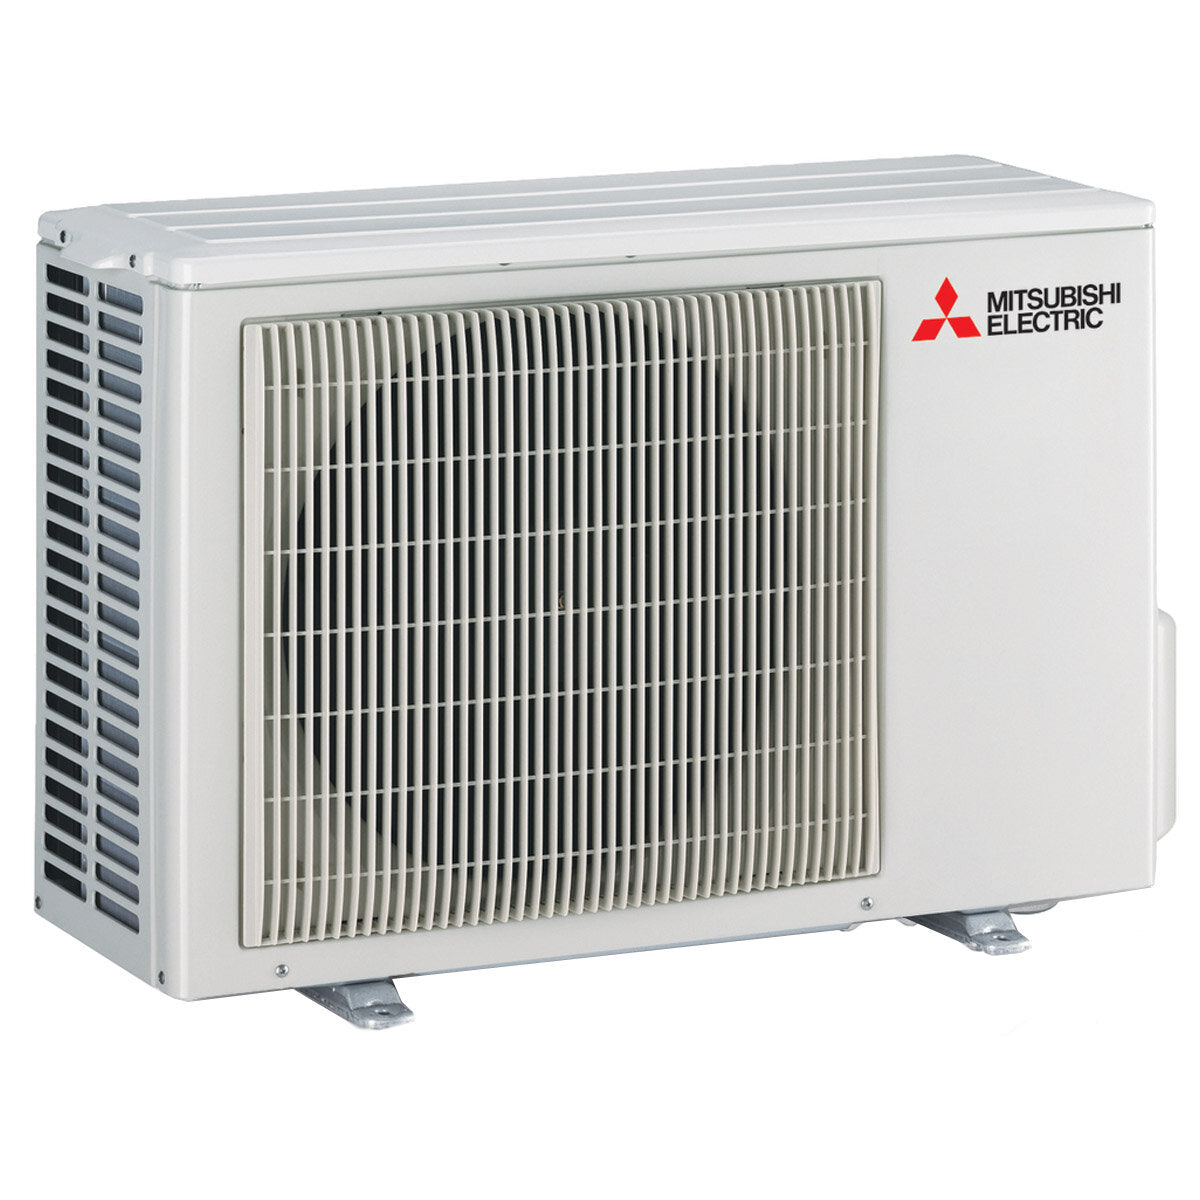 Mitsubishi Electric Klimaanlage AY-Serie Dual Split 9000+12000 BTU Inverter A++ WLAN-Außeneinheit 4,2 kW